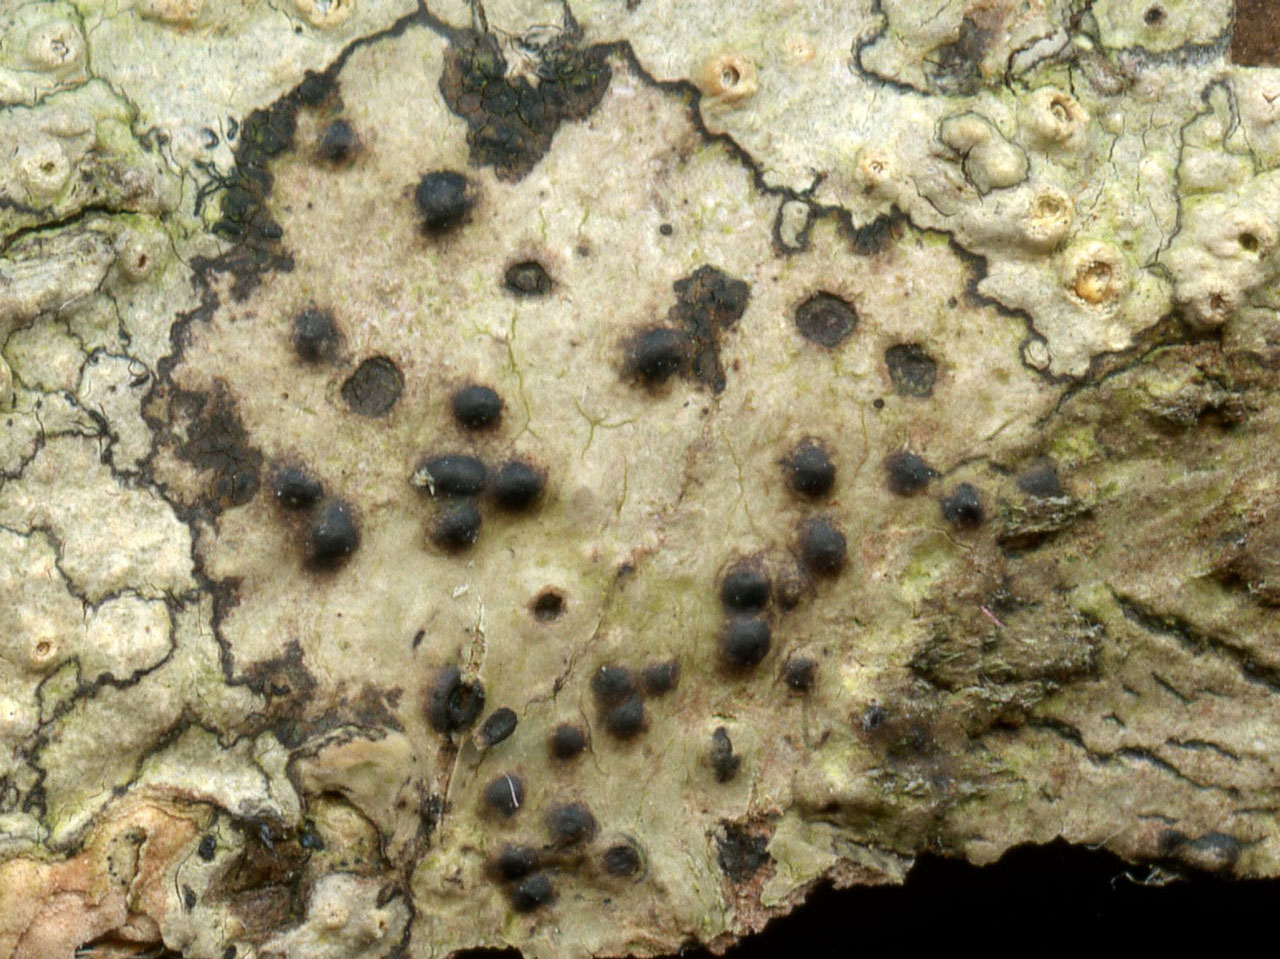 Pyrenula acutispora, Parc Dolmelynllyn, Meirionnydd